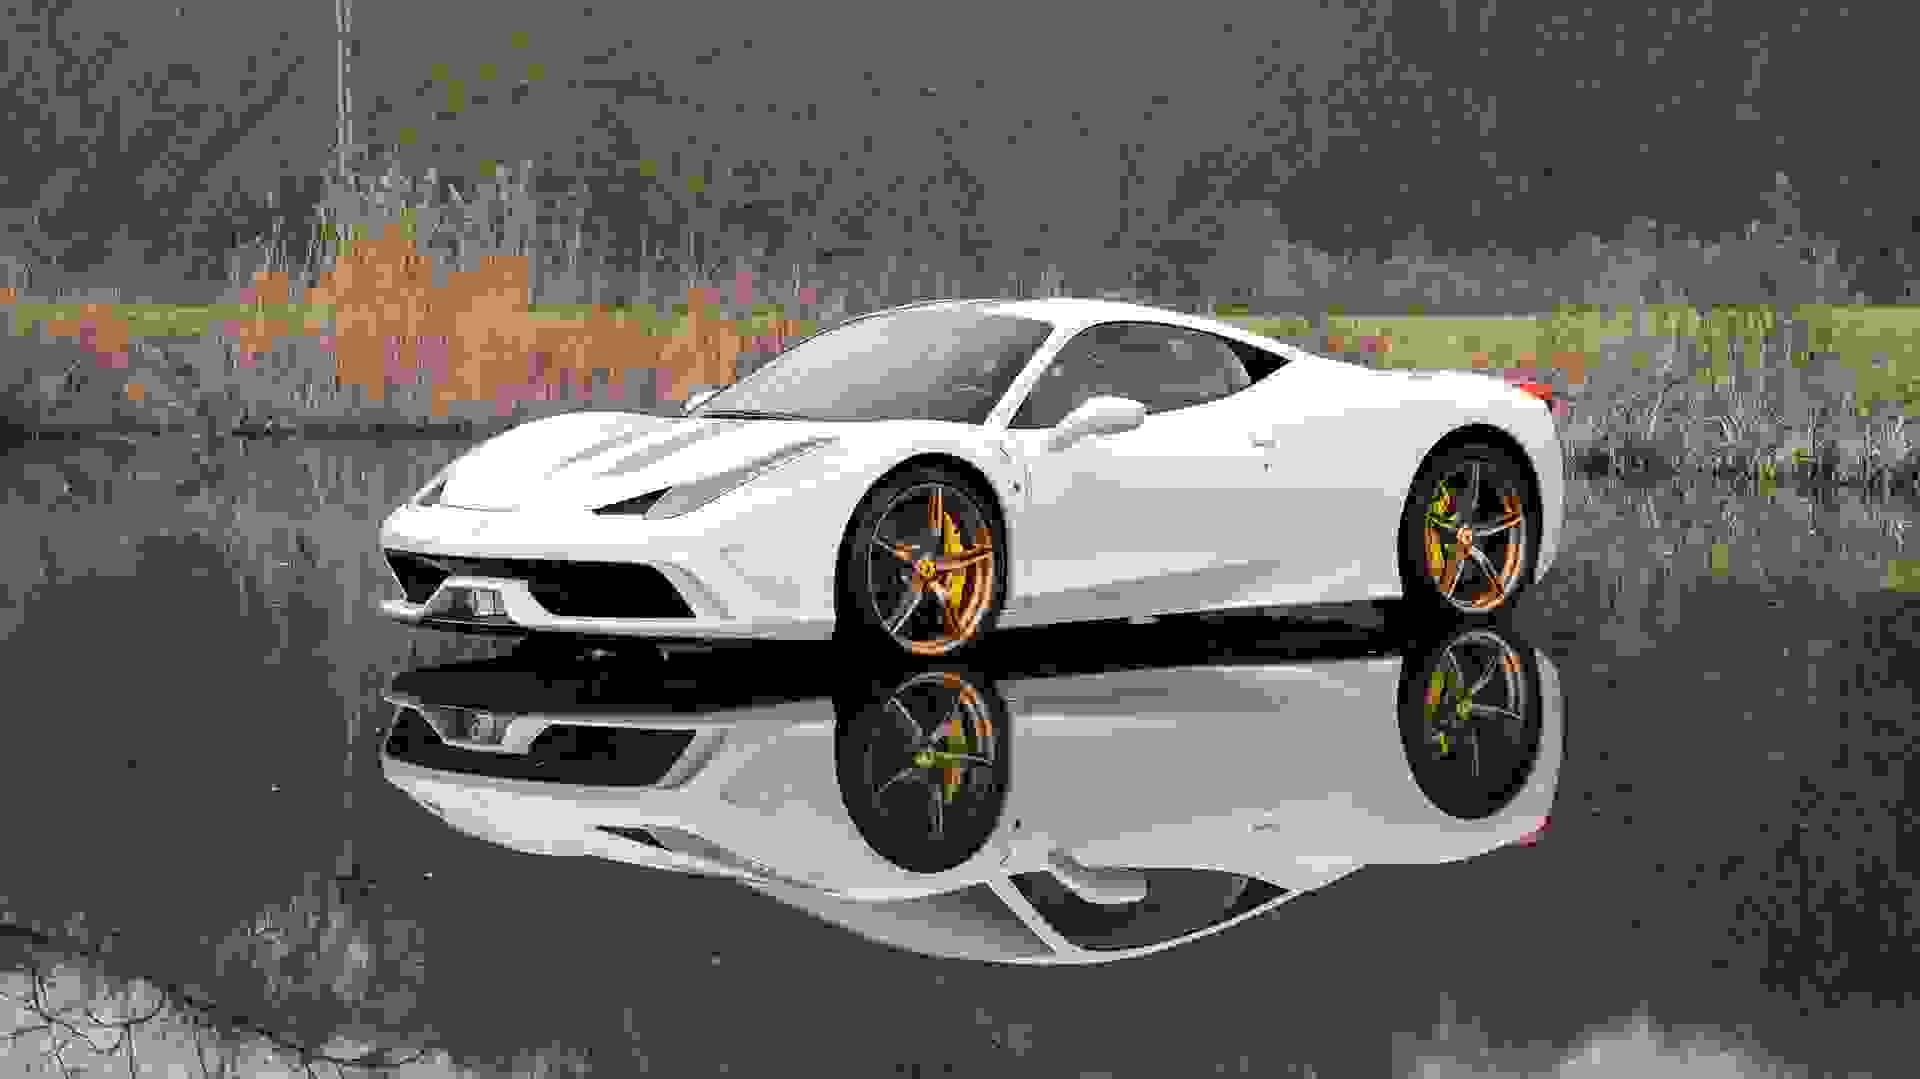 Ferrari 458 SPECIALE Photo 8b37a8f8-8aa1-4d8f-80f0-dee6d563683c.jpg